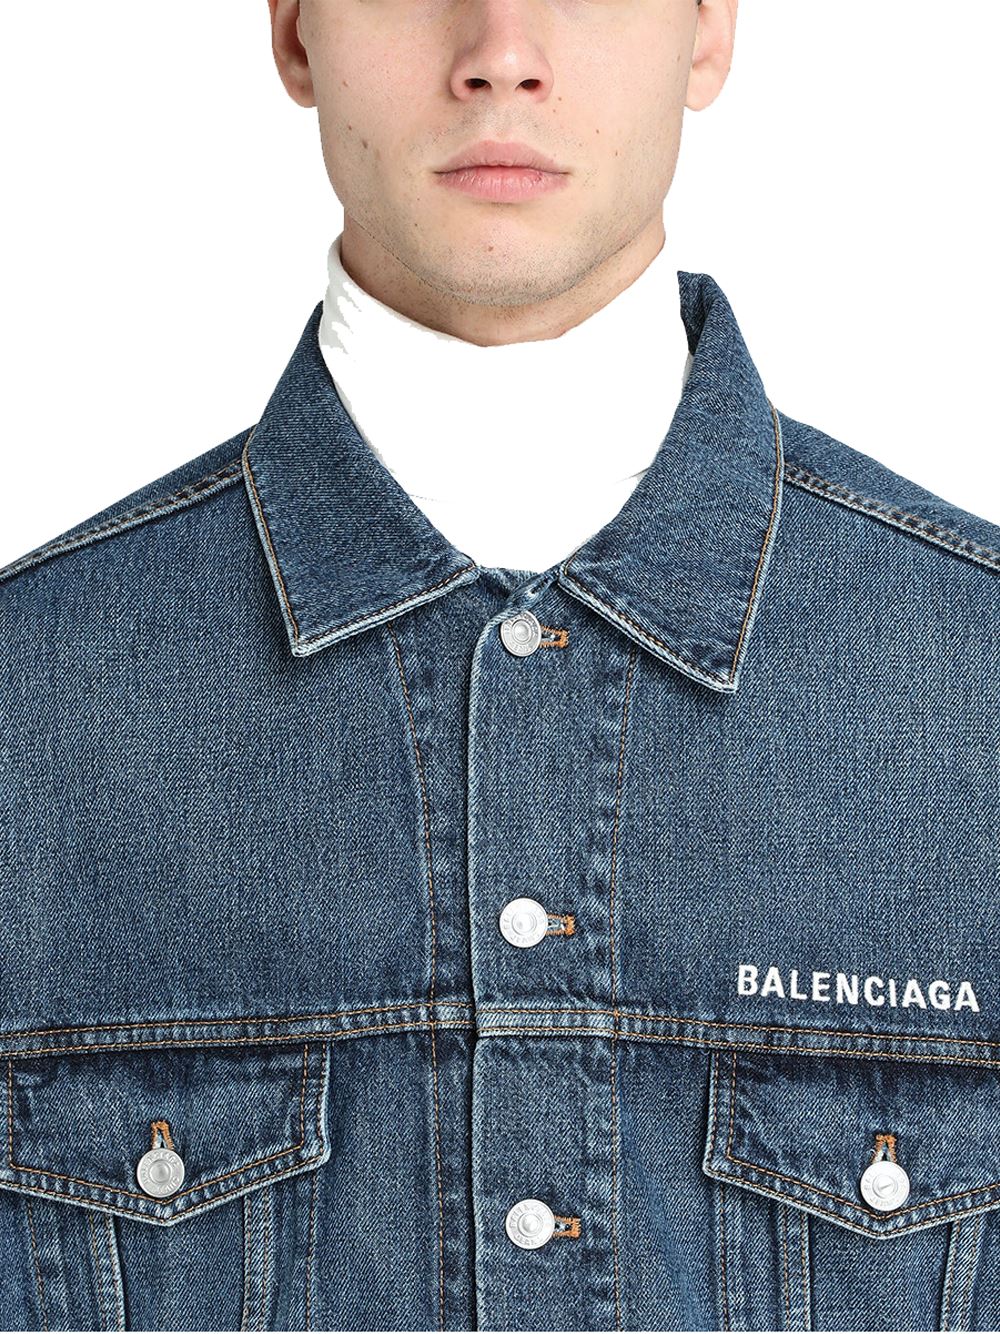 Chi tiết 52 về jean jacket balenciaga mới nhất  cdgdbentreeduvn